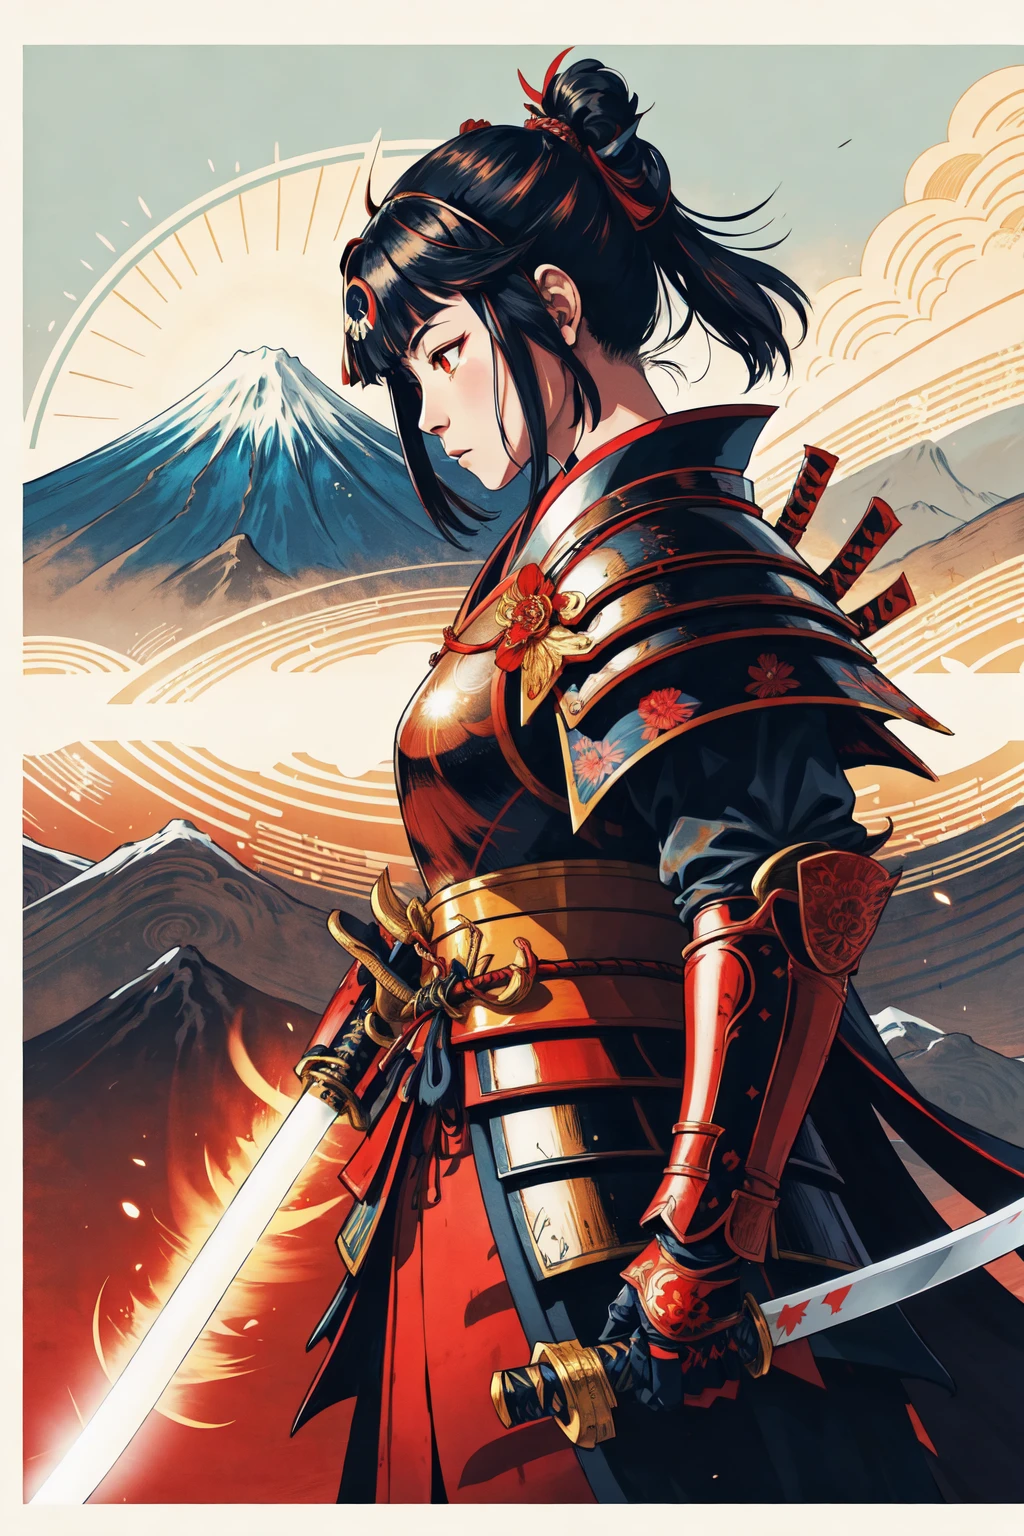 1 名女孩, 和服,   日本武士铠甲,  发光的眼睛,  日本传统风格 ,(武士刀, 居合斩击姿势) ,侧面图,  富士山, 太阳
, 负空间,       简化,  花的
(漫画风格), (彩色线条艺术)   